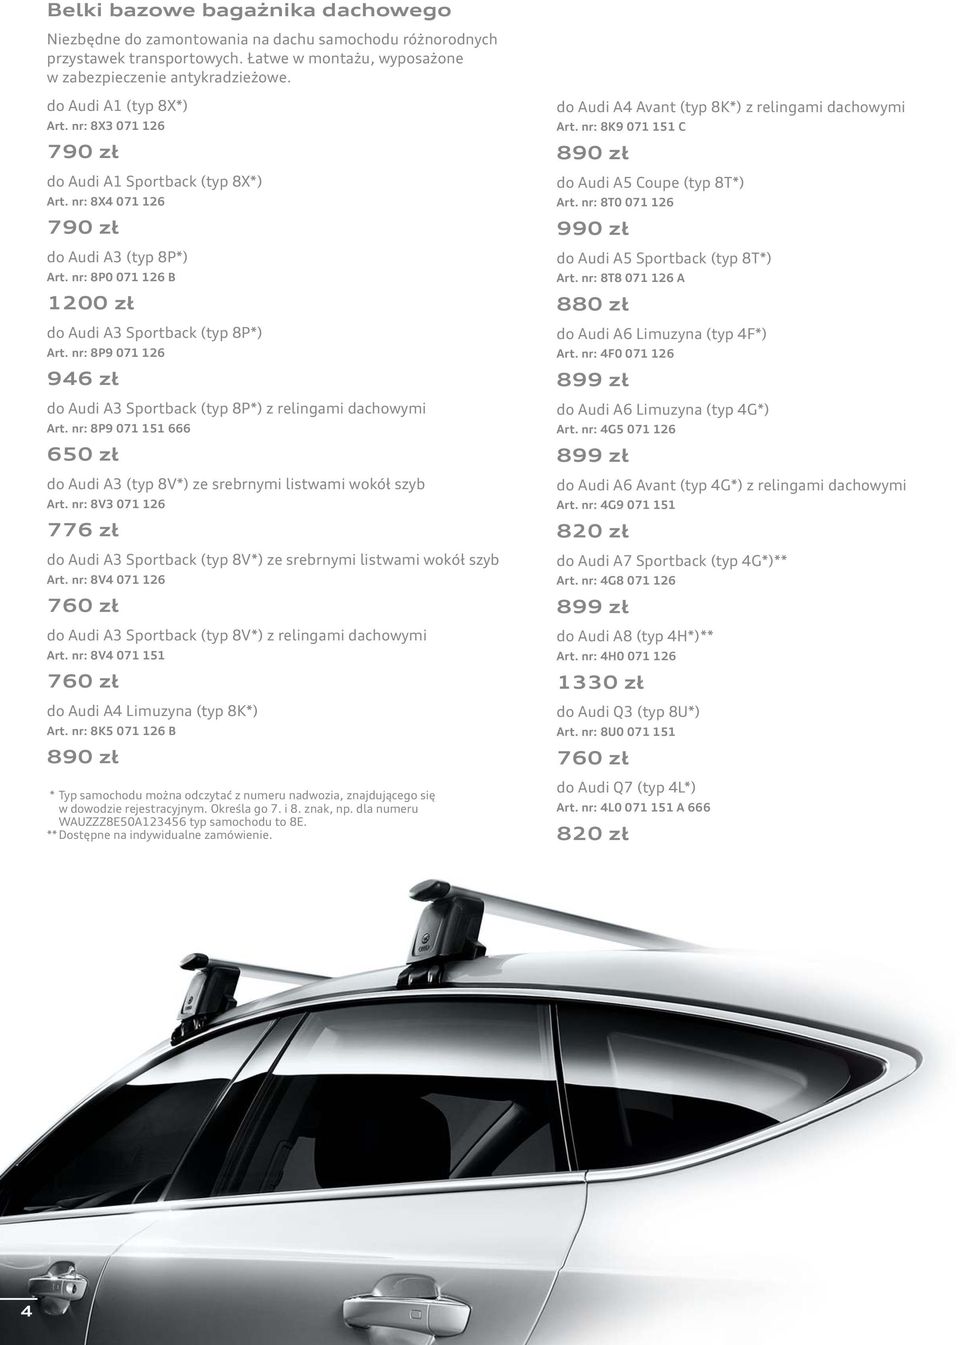 nr: 8P9 071 126 946 zł do Audi A3 Sportback (typ 8P*) z relingami dachowymi Art. nr: 8P9 071 151 666 650 zł do Audi A3 (typ 8V*) ze srebrnymi listwami wokół szyb Art.